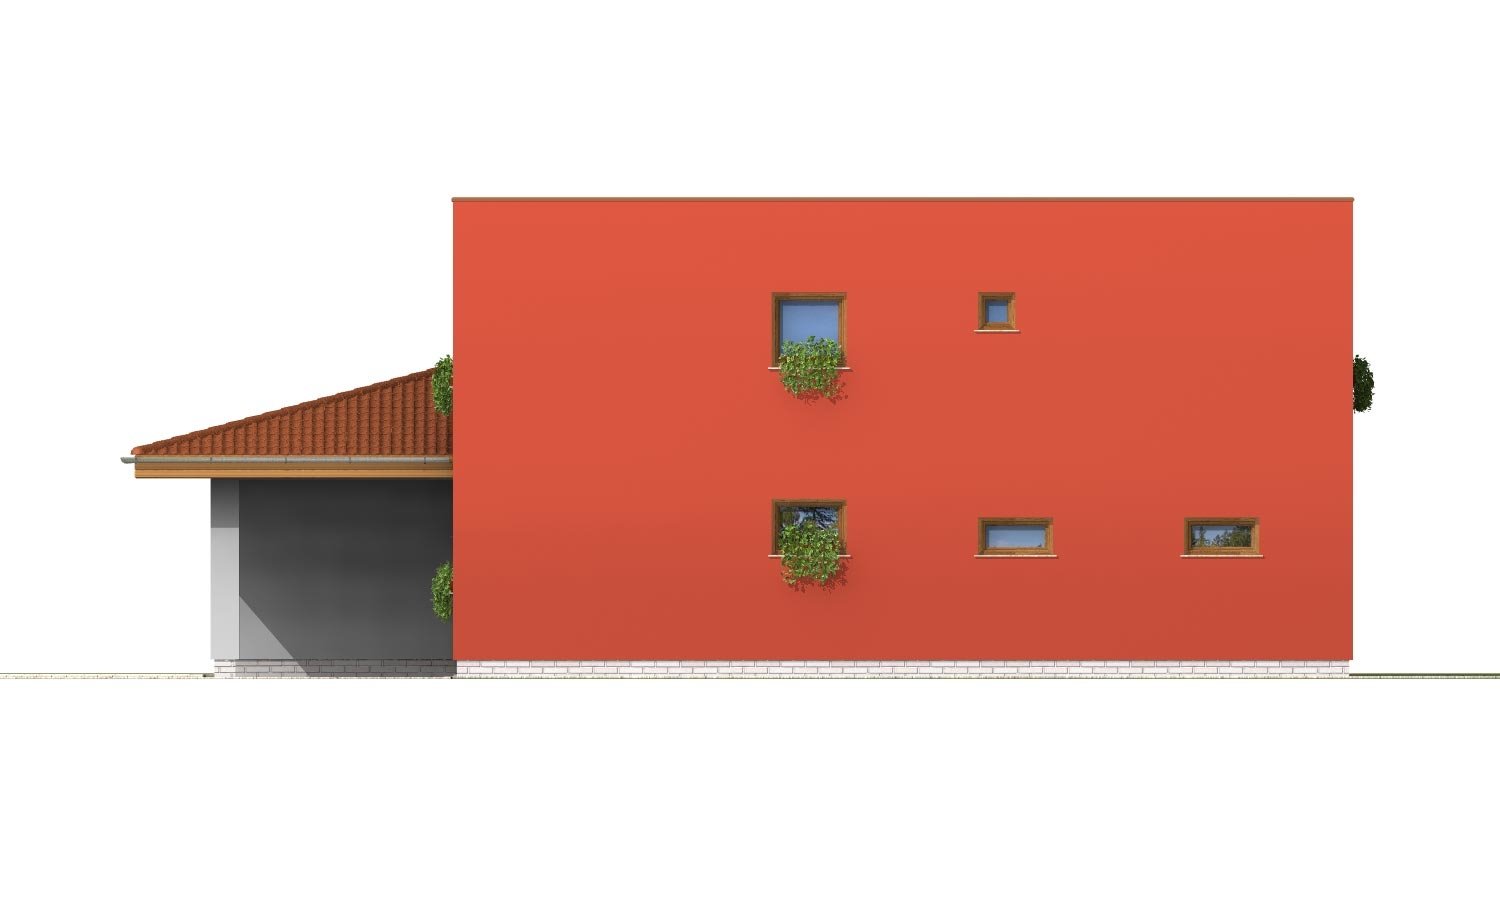 Pohľad 2. - Moderní poschoďový dům s garáží a pokojem v přízemí.